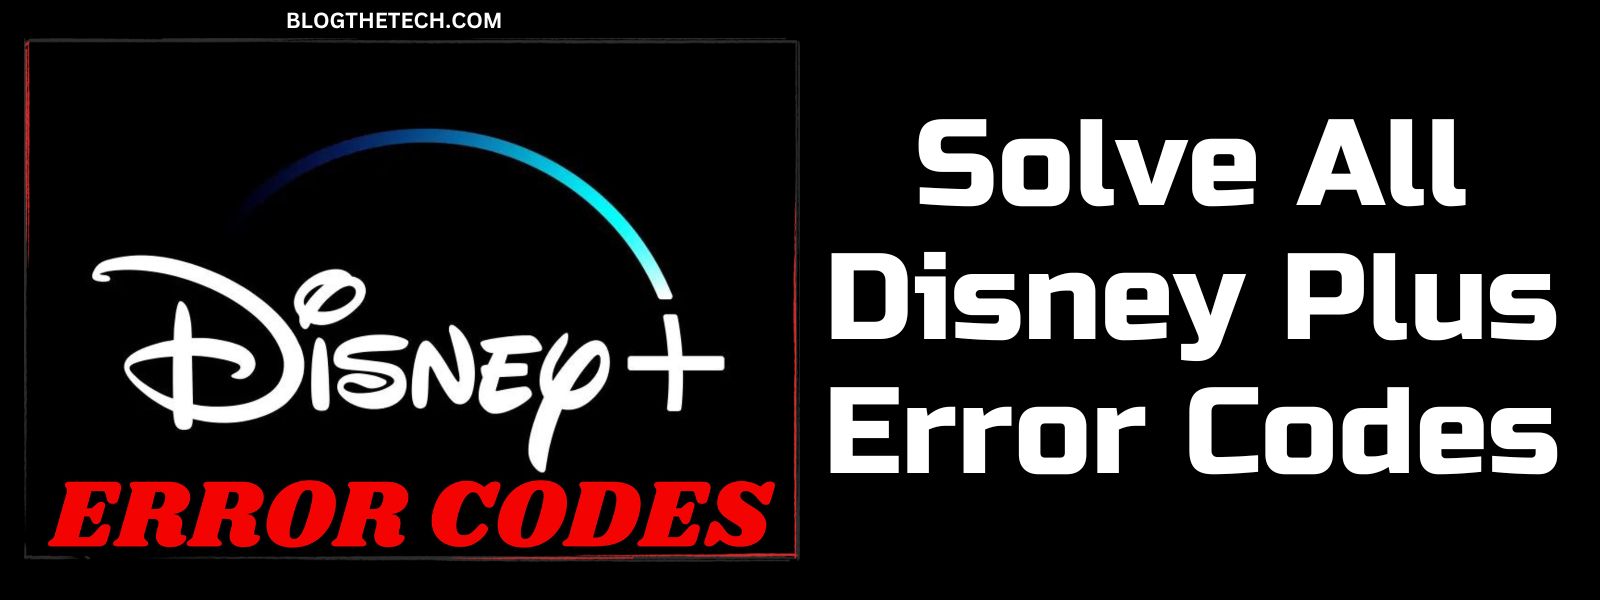 Solve All Disney Plus Error Codes-featured